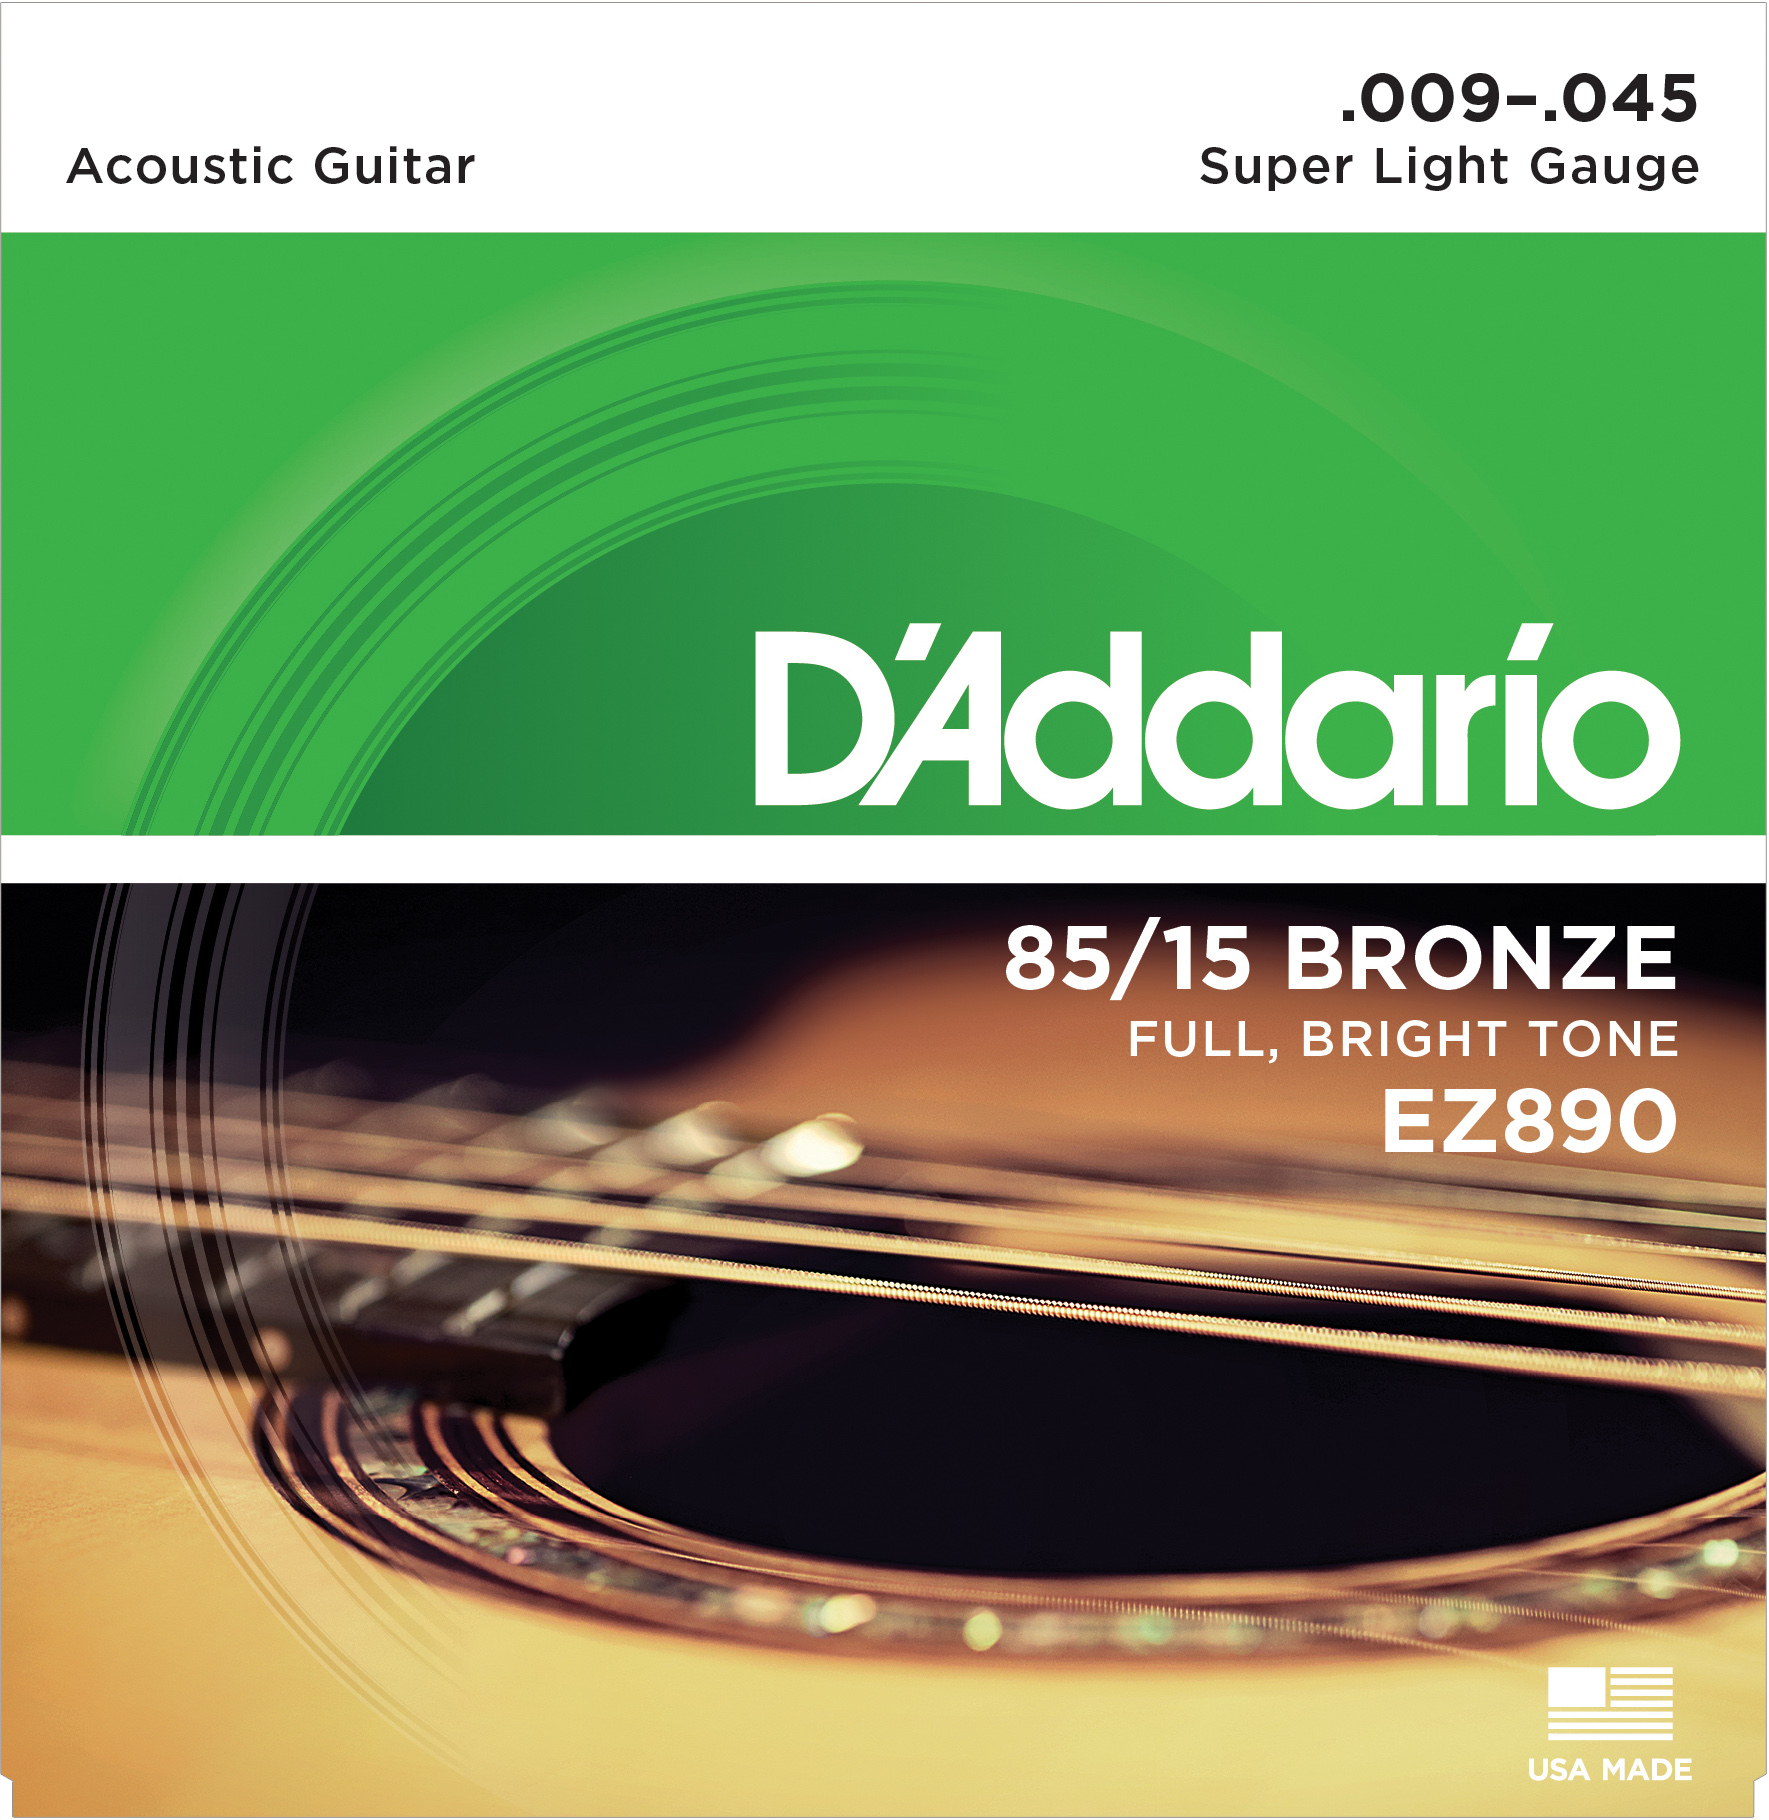 EZ890 AMERICAN BRONZE 85/15 Струны для акустической гитары Super Light 9-45 D'Addario